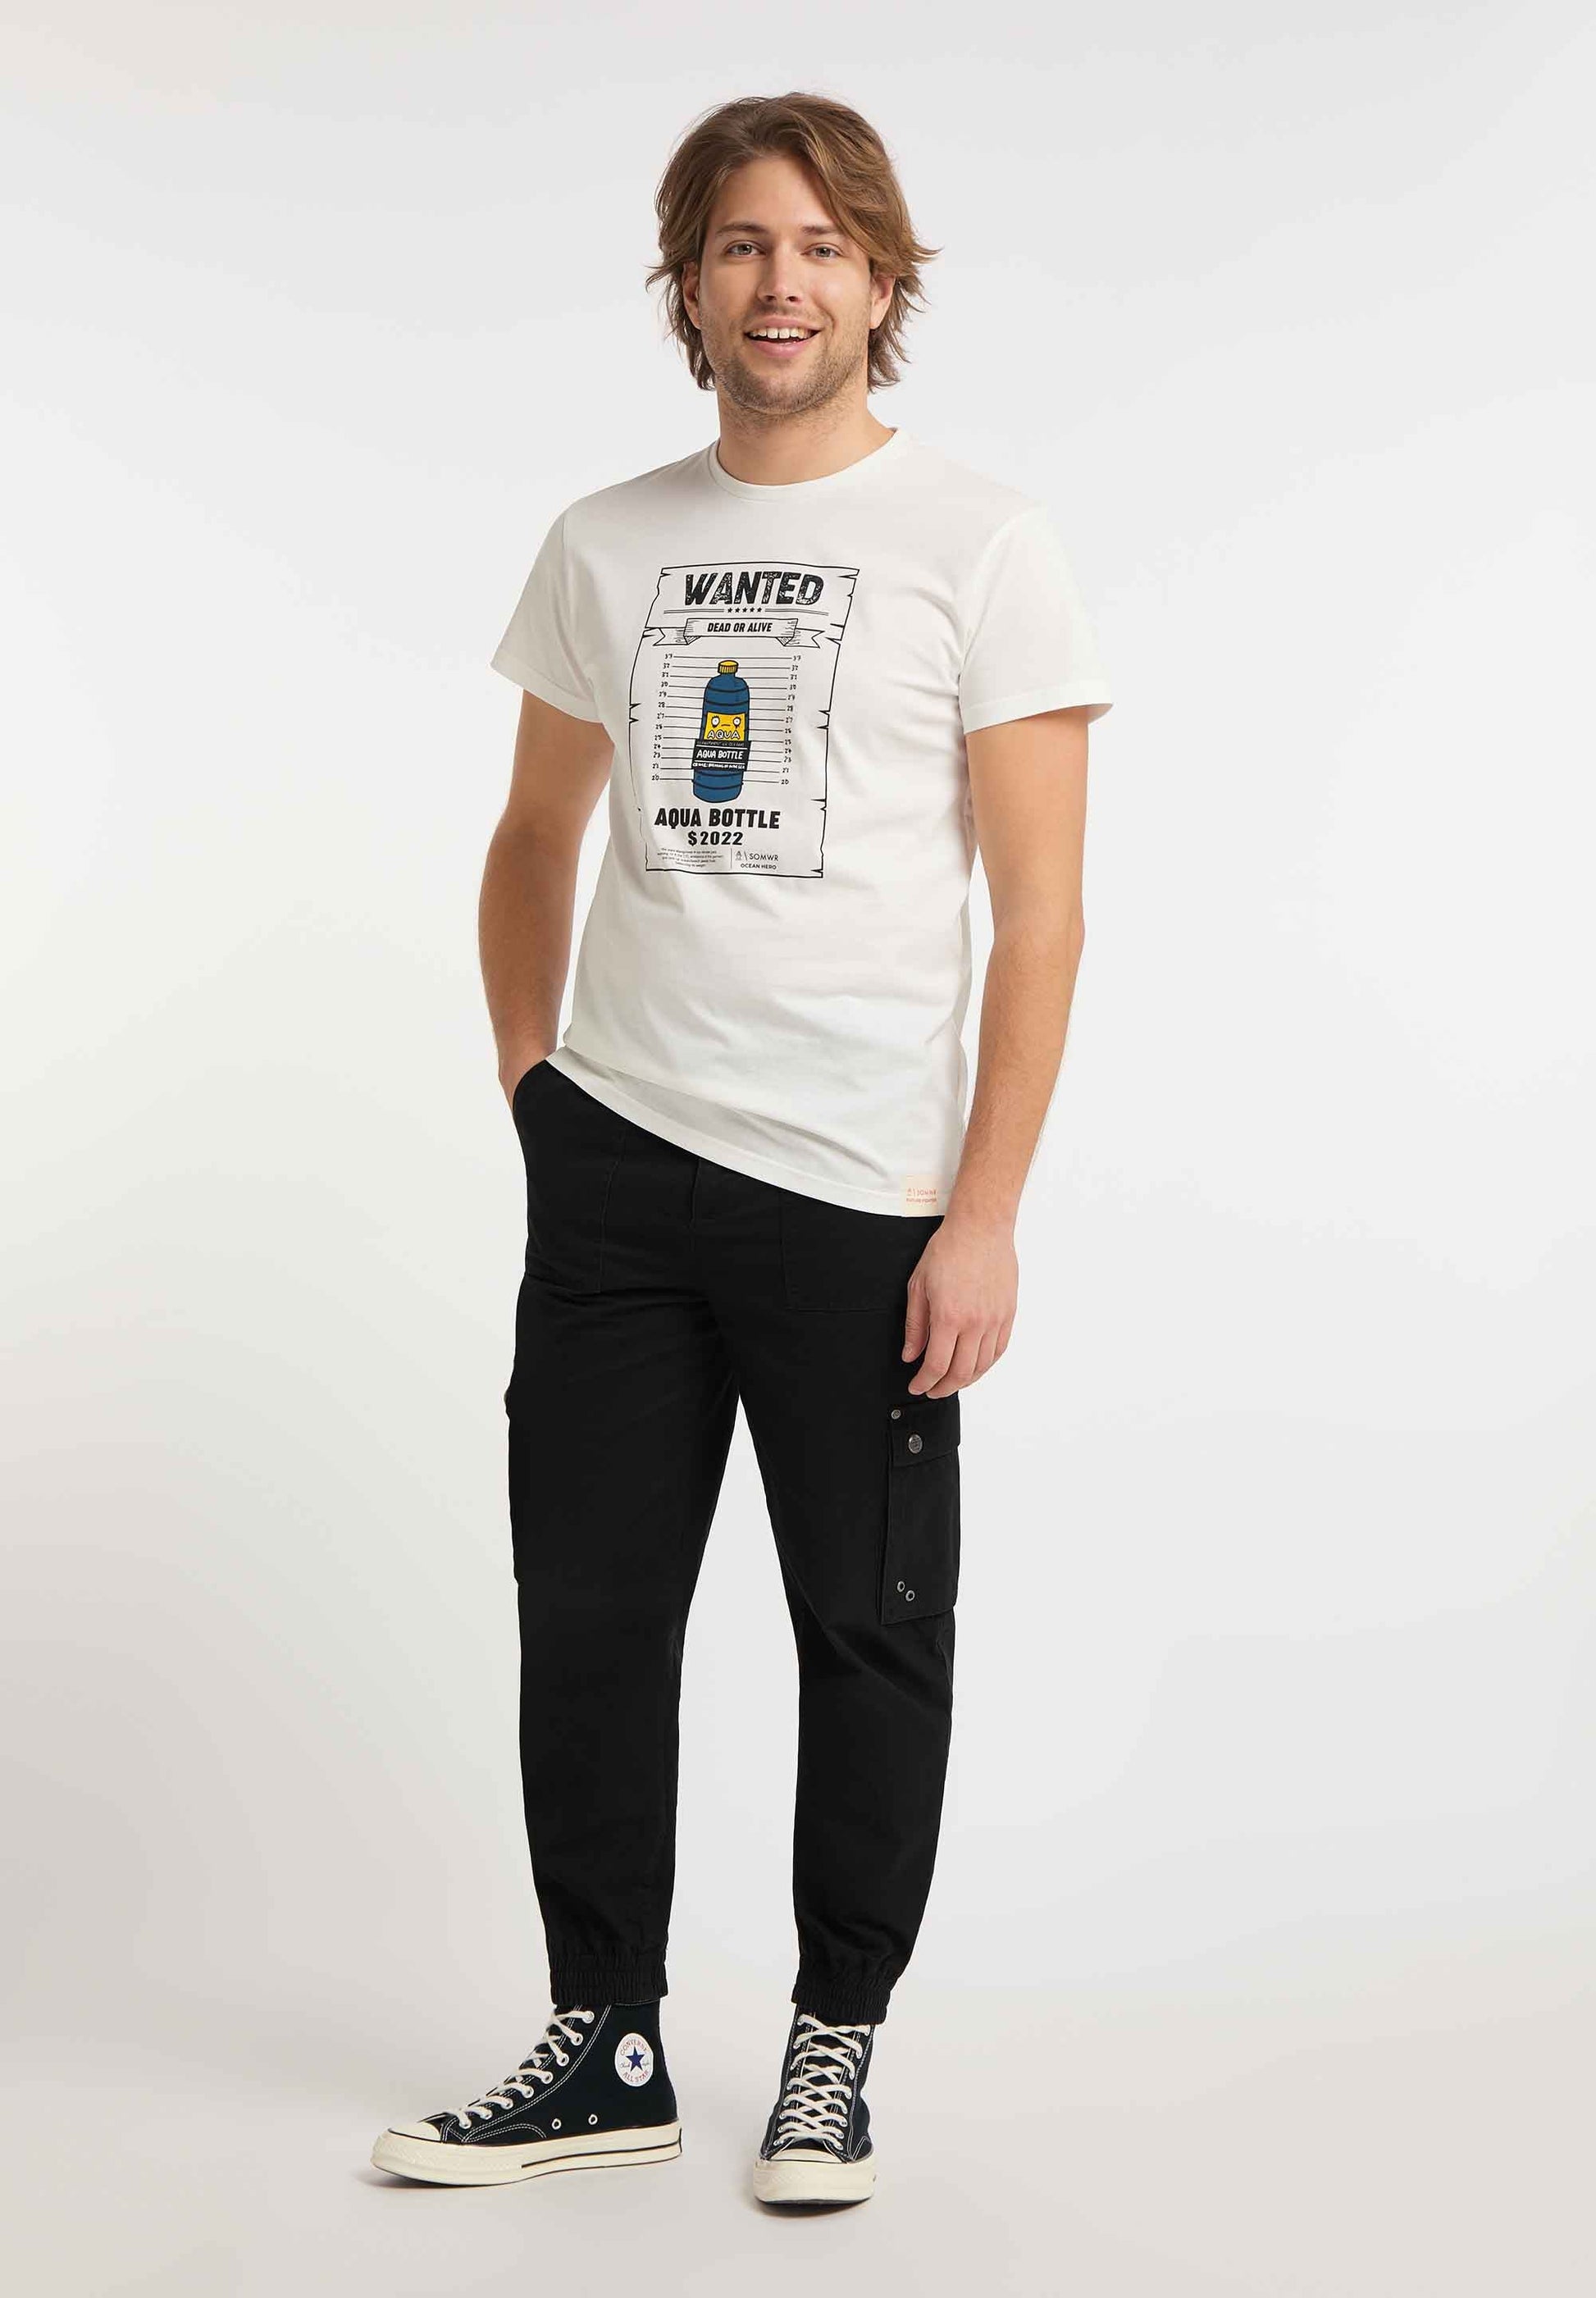 SOMWR CORRUPT T-Shirt UND001